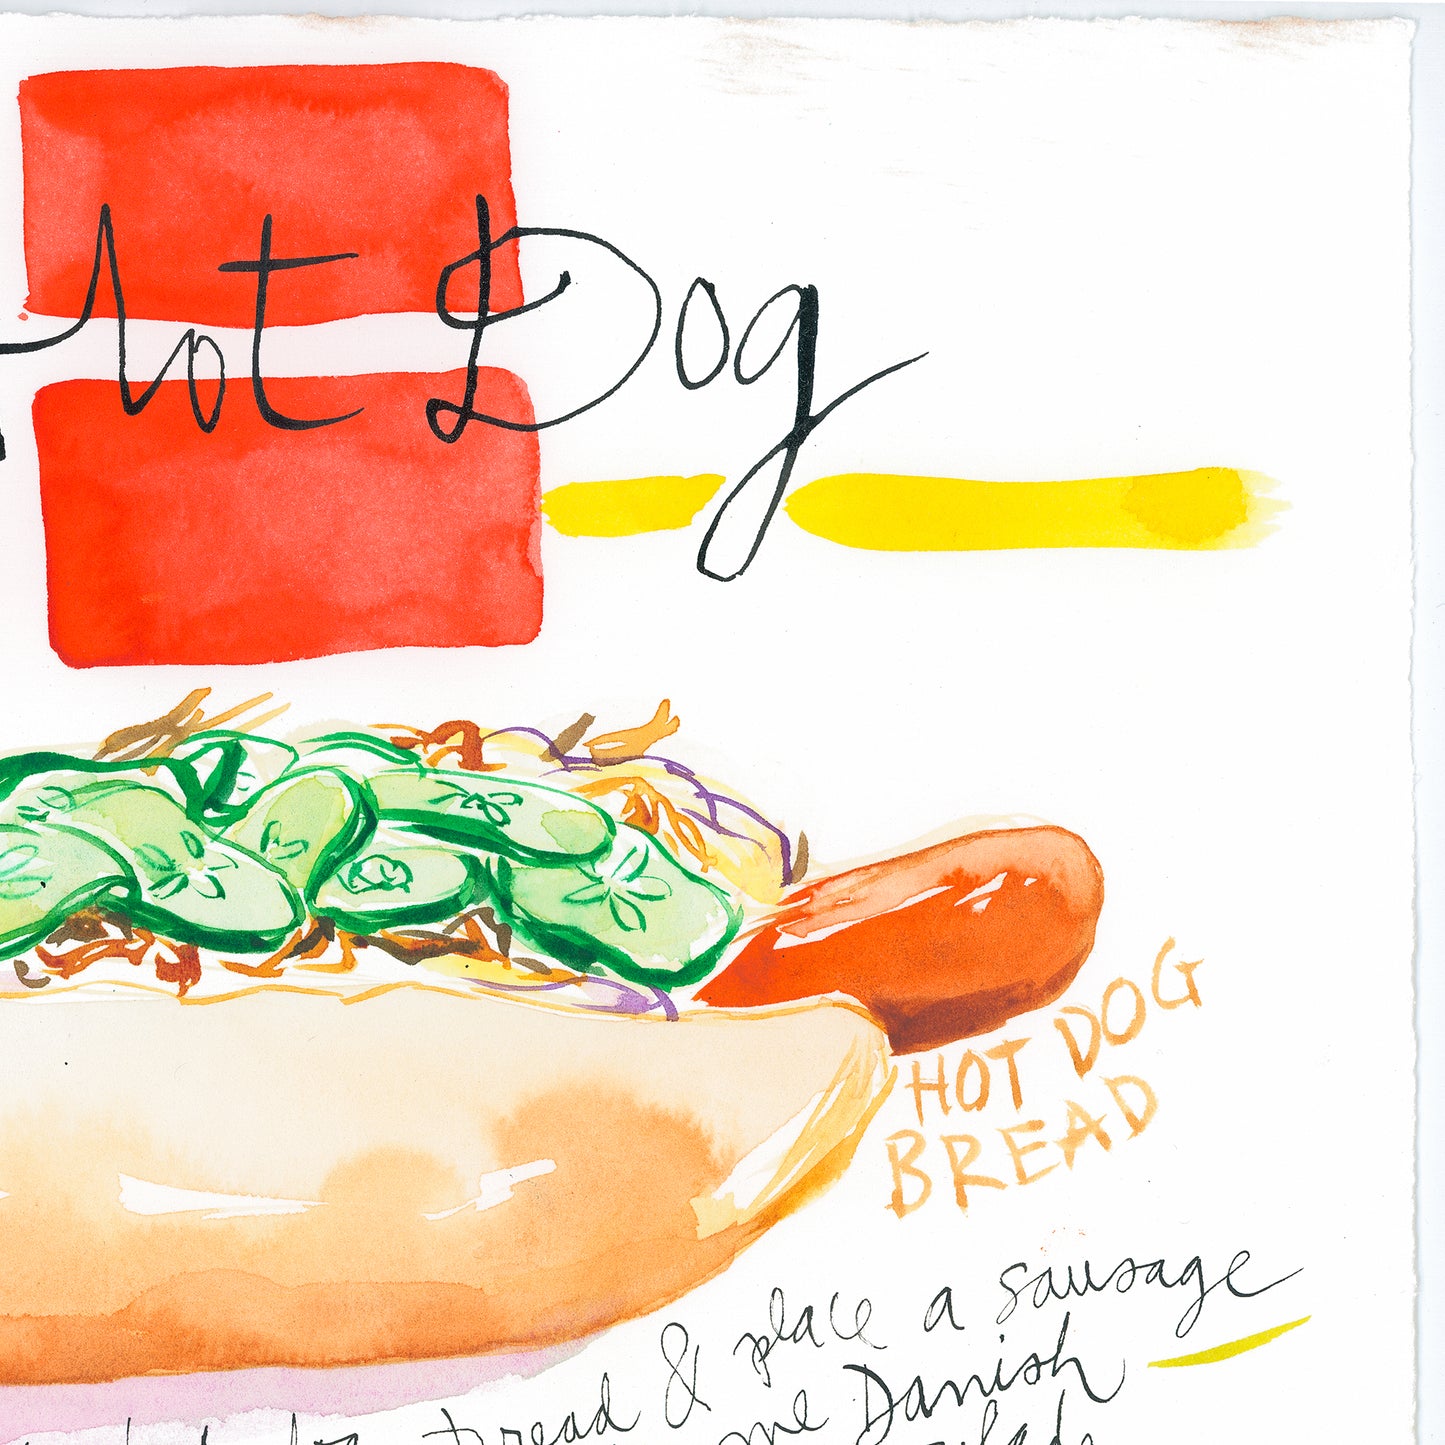 Danish Hot Dog recipe. Original watercolor painting